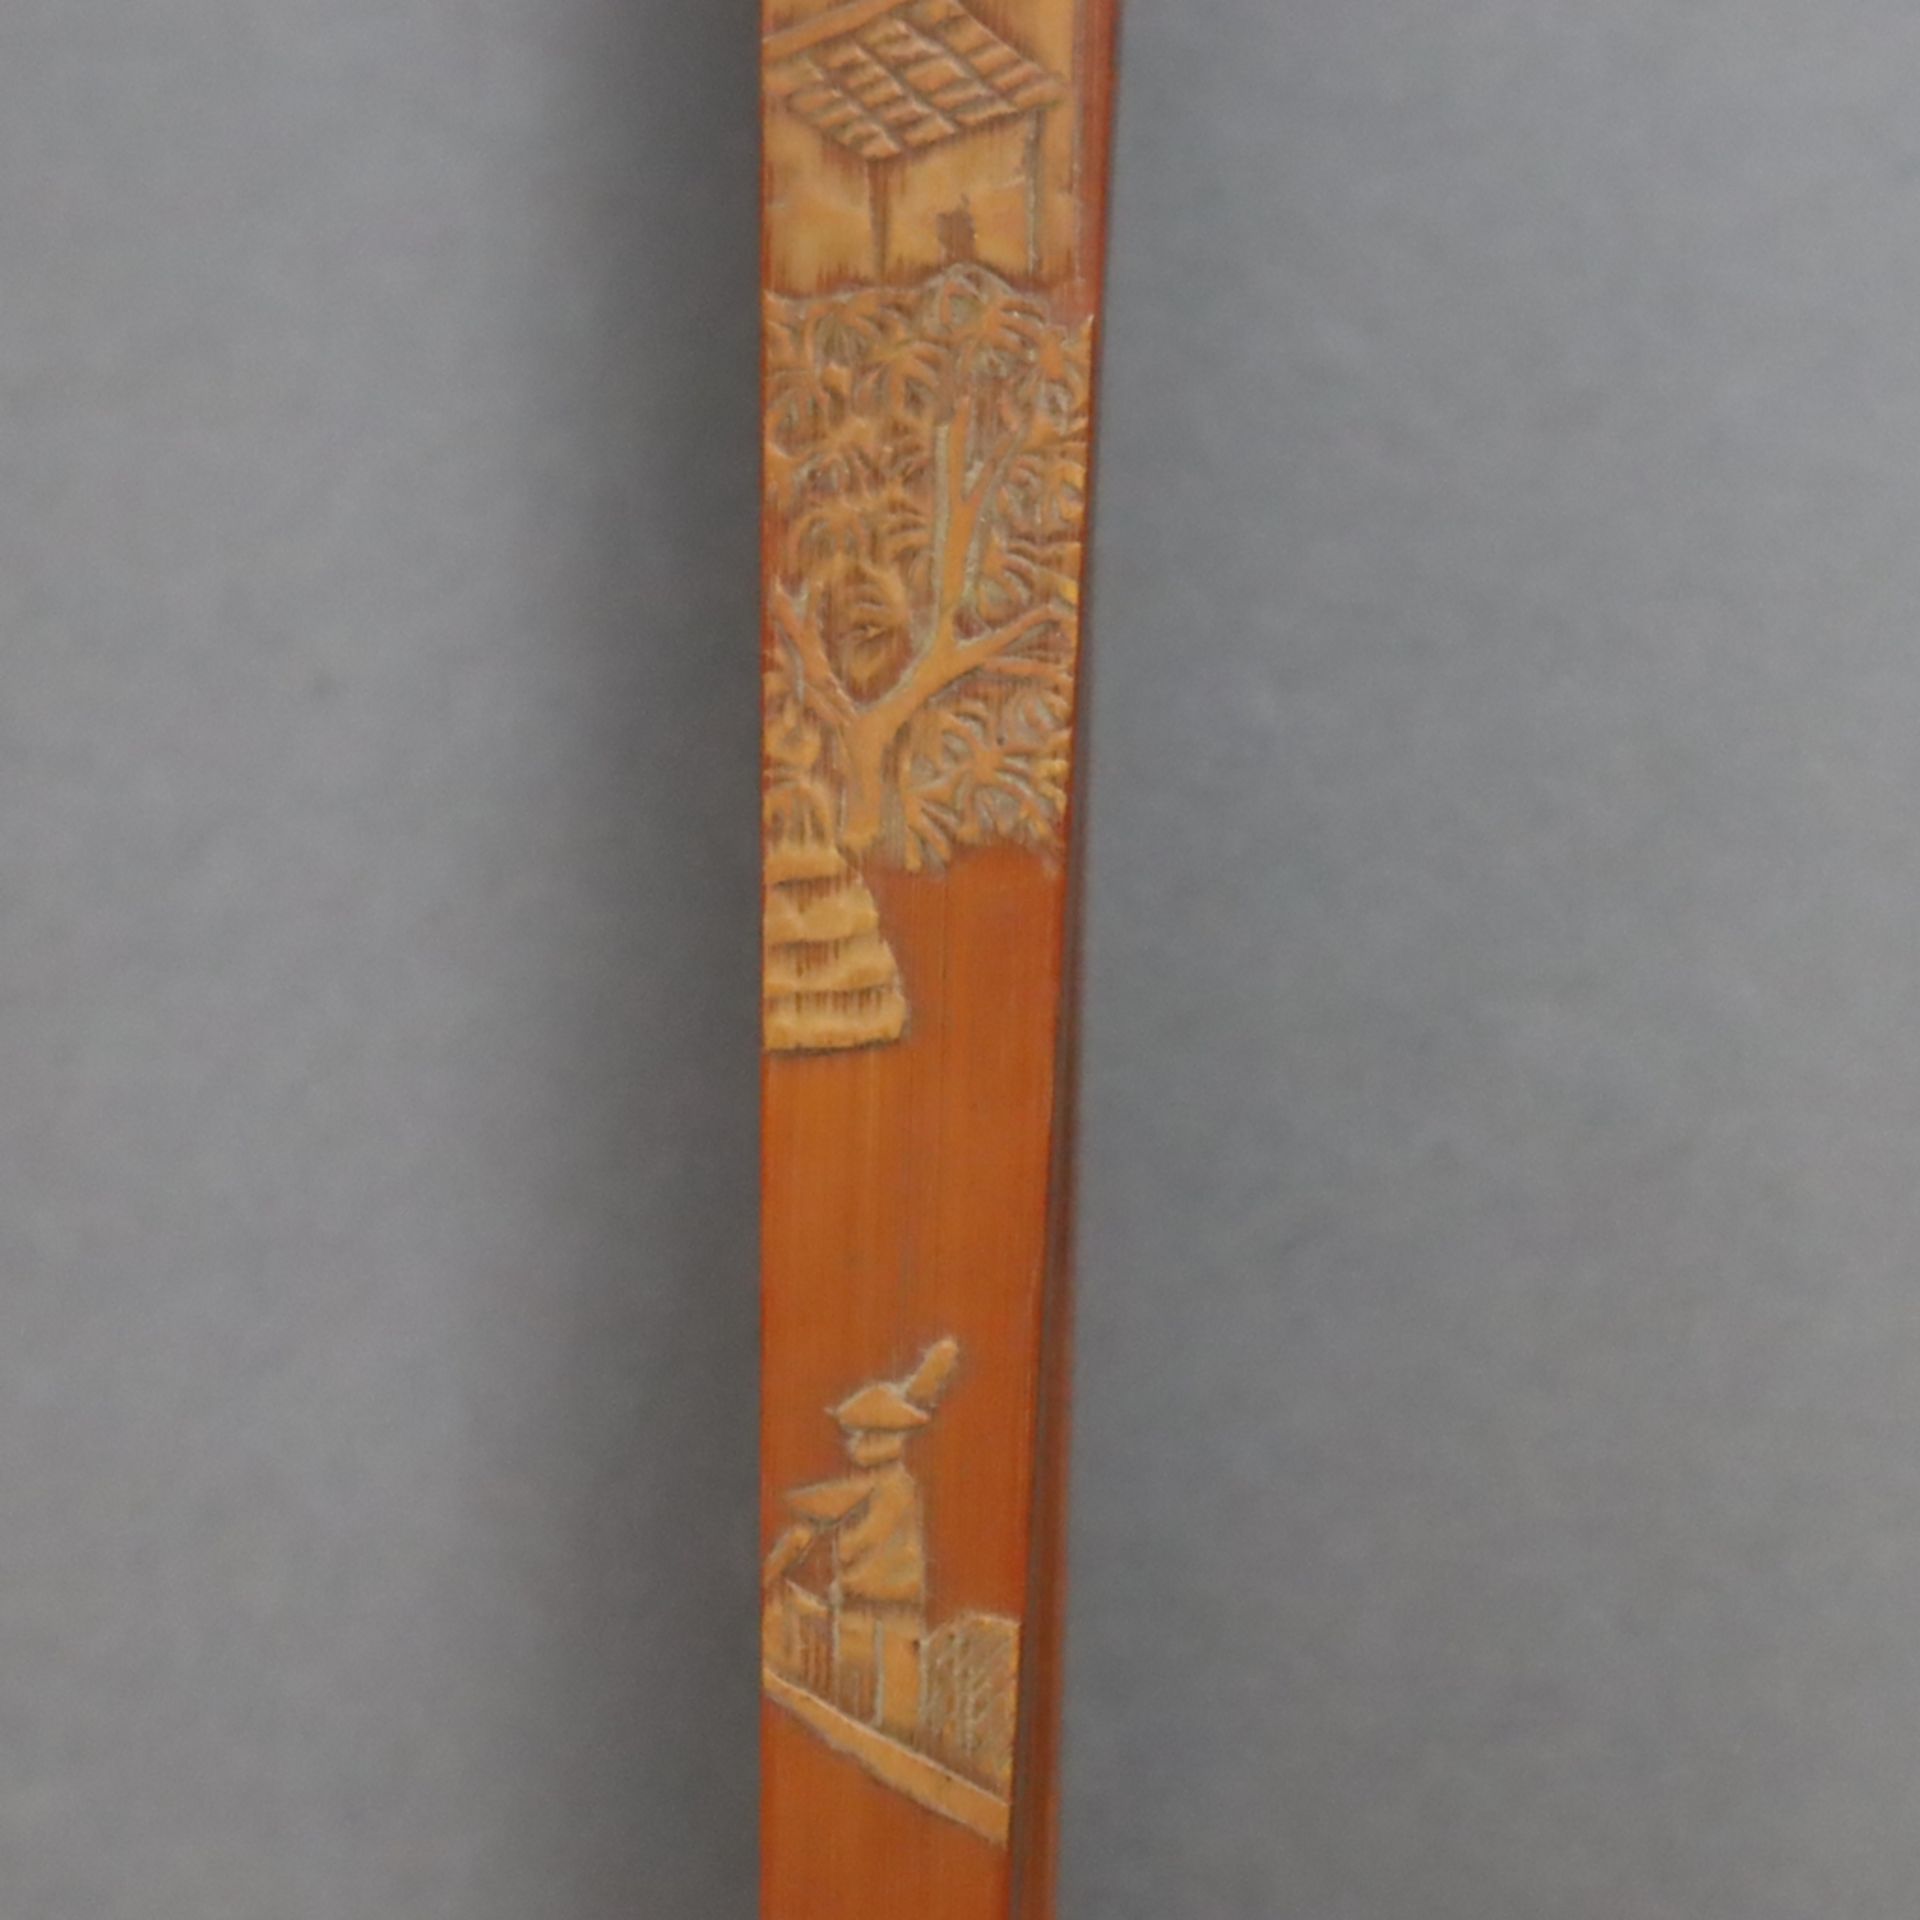 Fächer-Deckstäbe aus Bambus - China, Qing-Dynastie, Bambusholz fein beschnitzt mit Architekturlands - Image 5 of 8